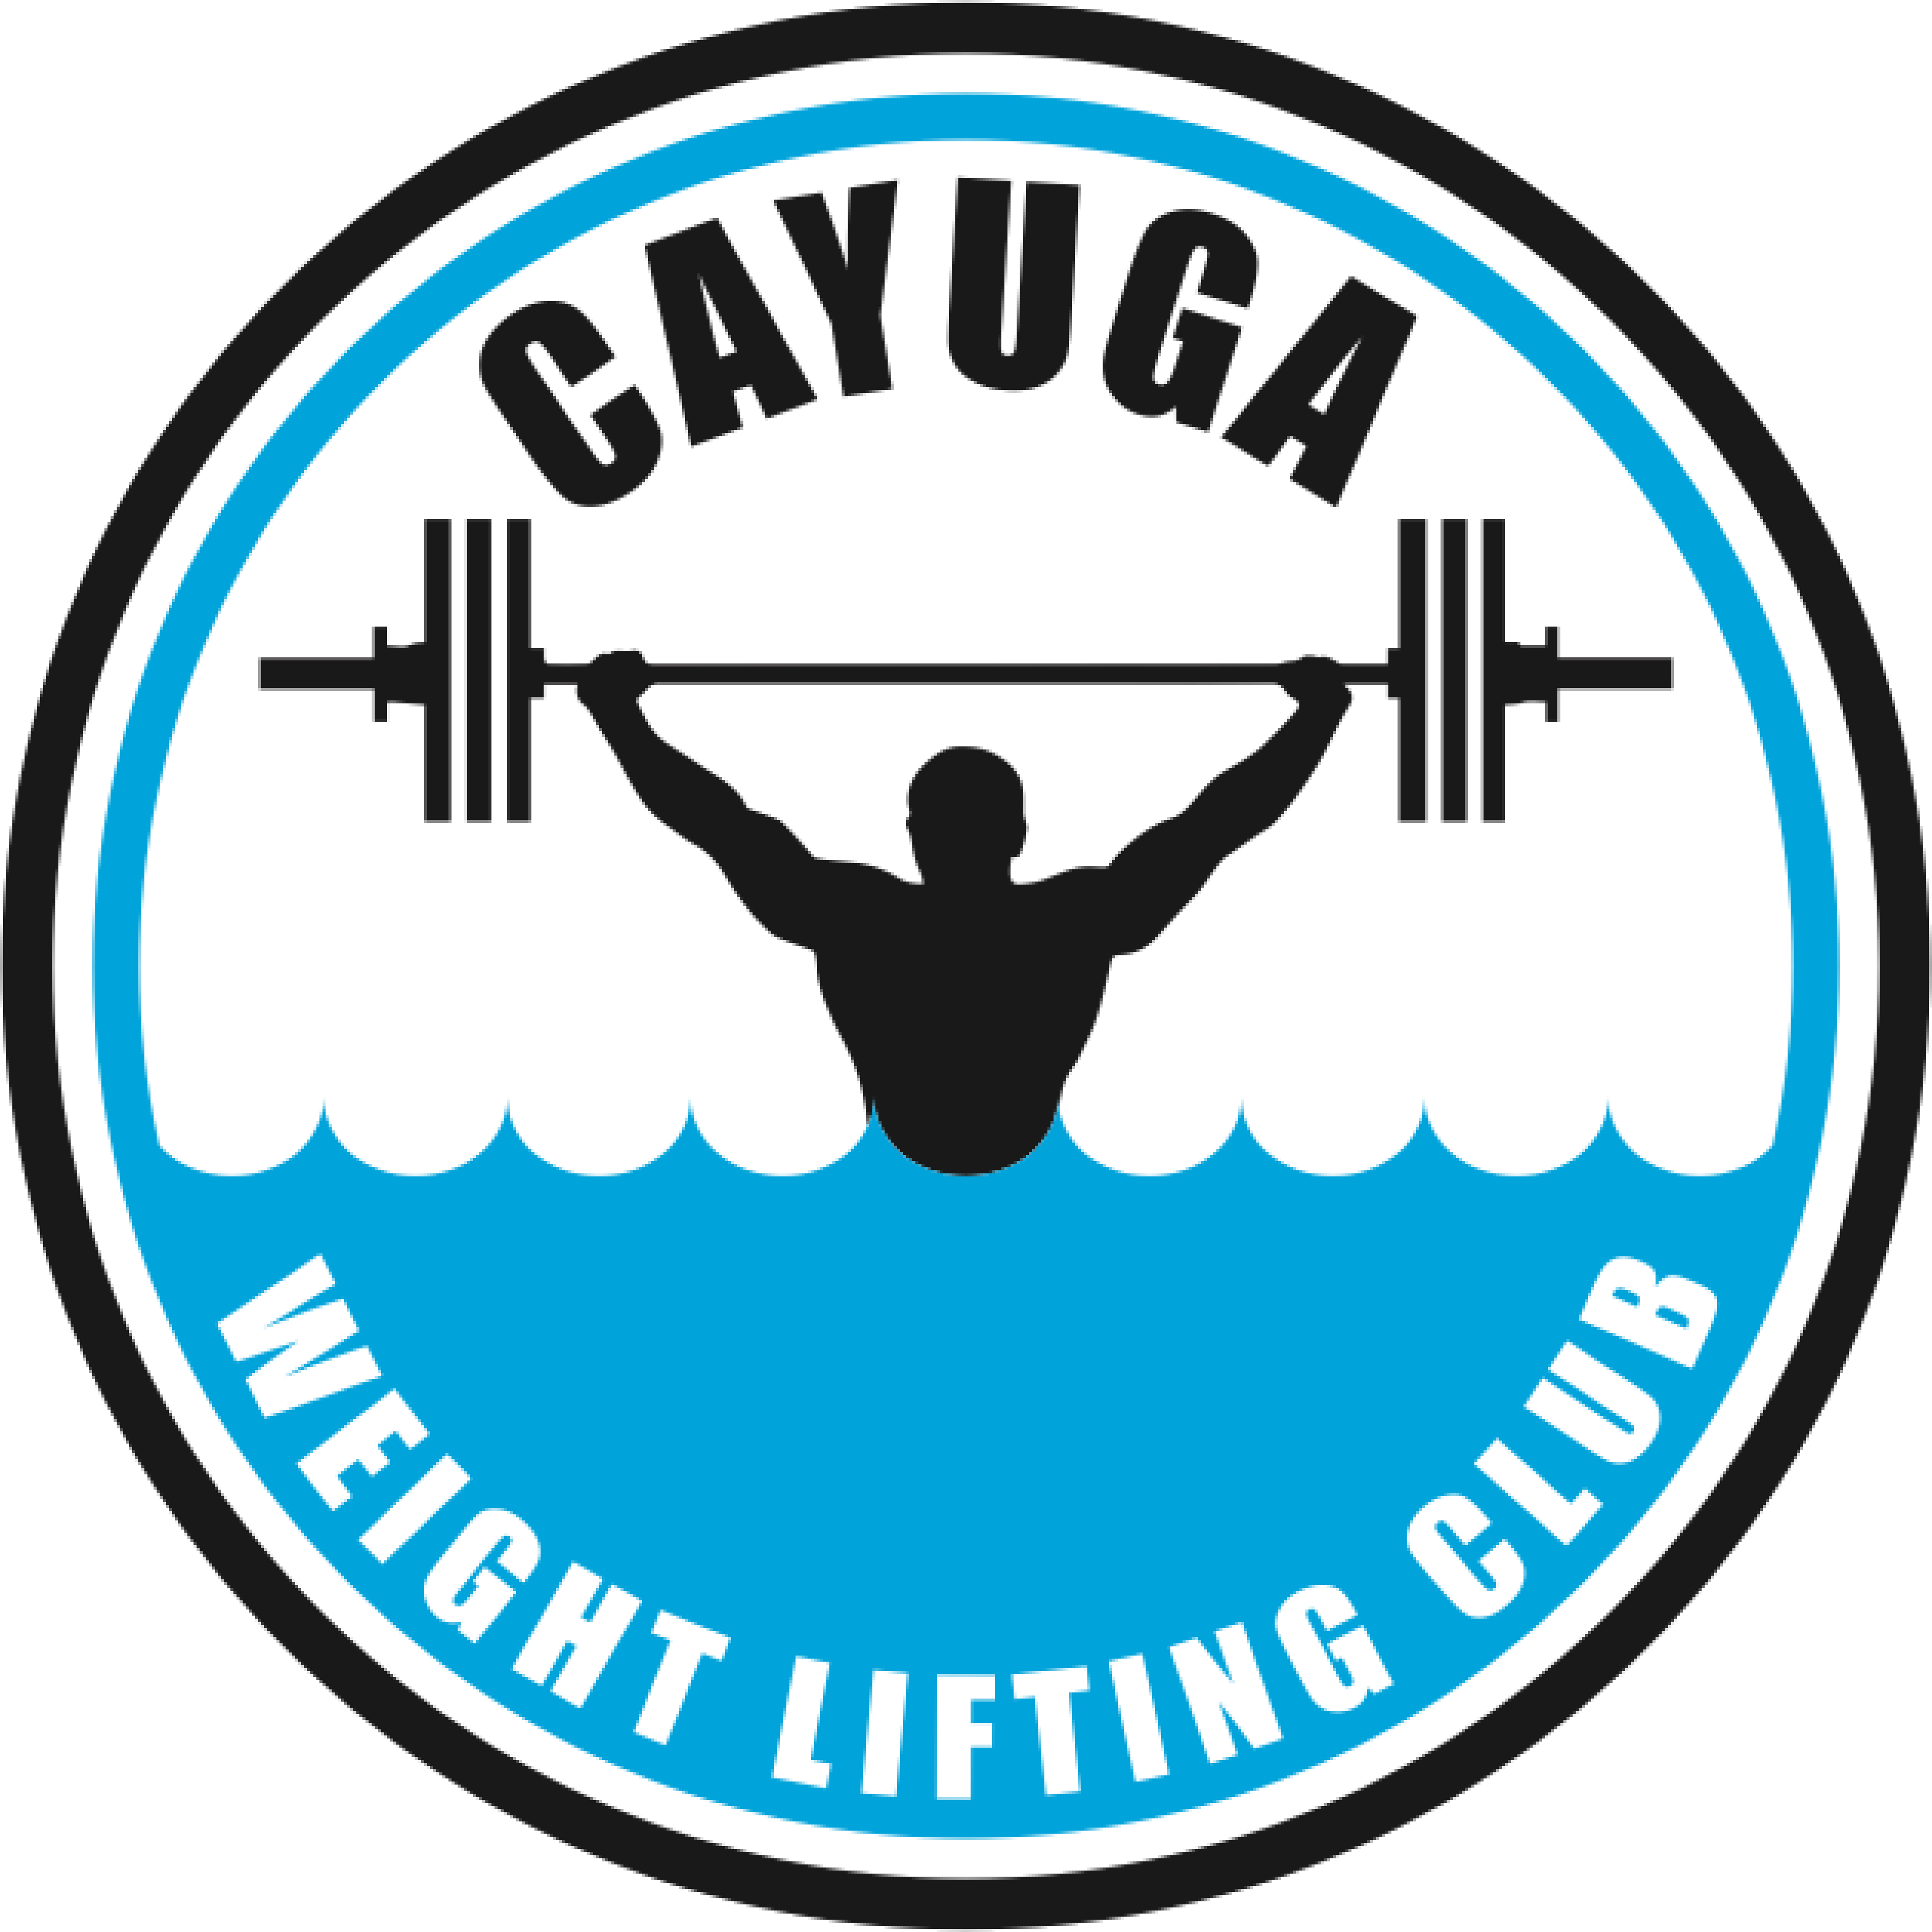 Cayuga Weightlifting Club